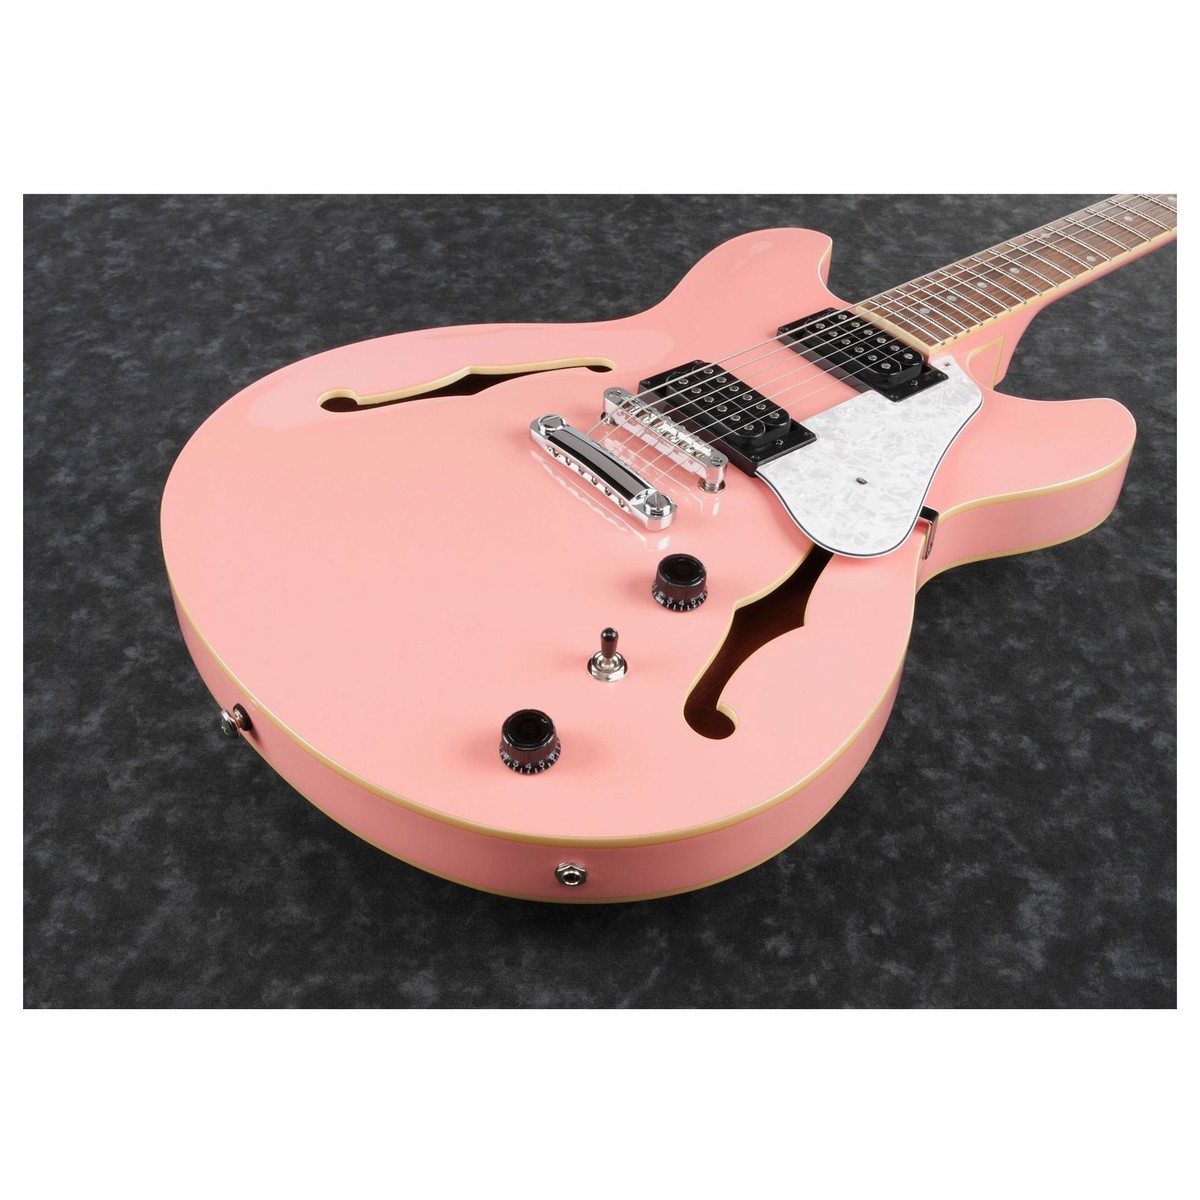 Ibanez As63 Crp Artcore Hh Ht Lau - Coral Pink - Guitarra eléctrica semi caja - Variation 1